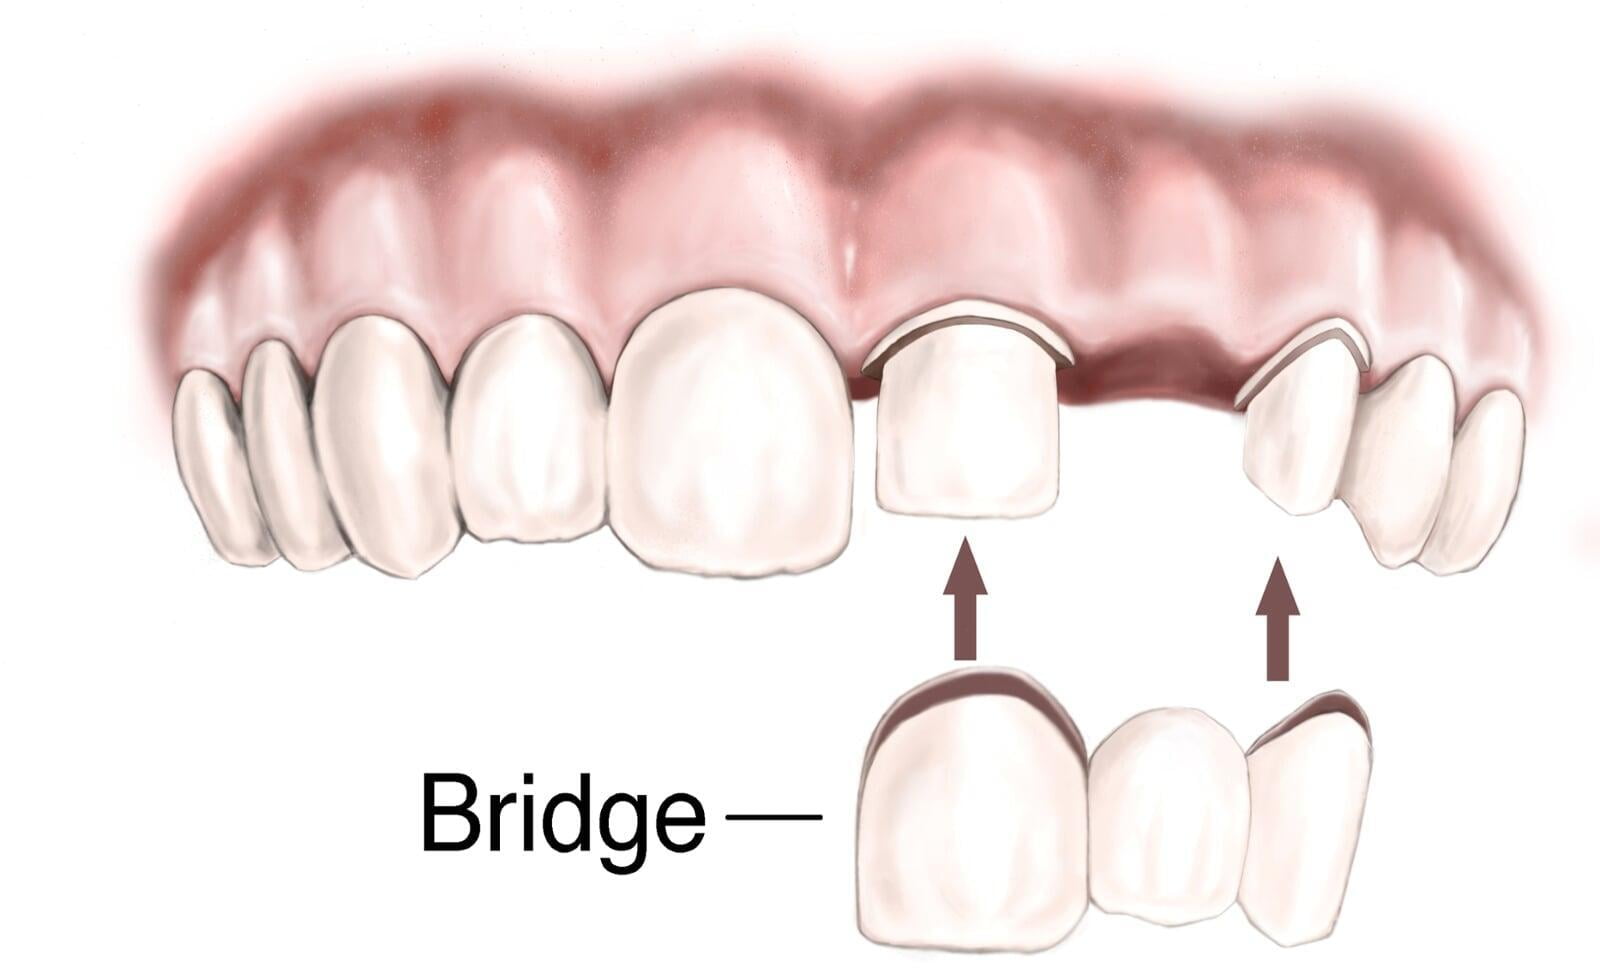 ITS Dental Hospital fixed partial dentures